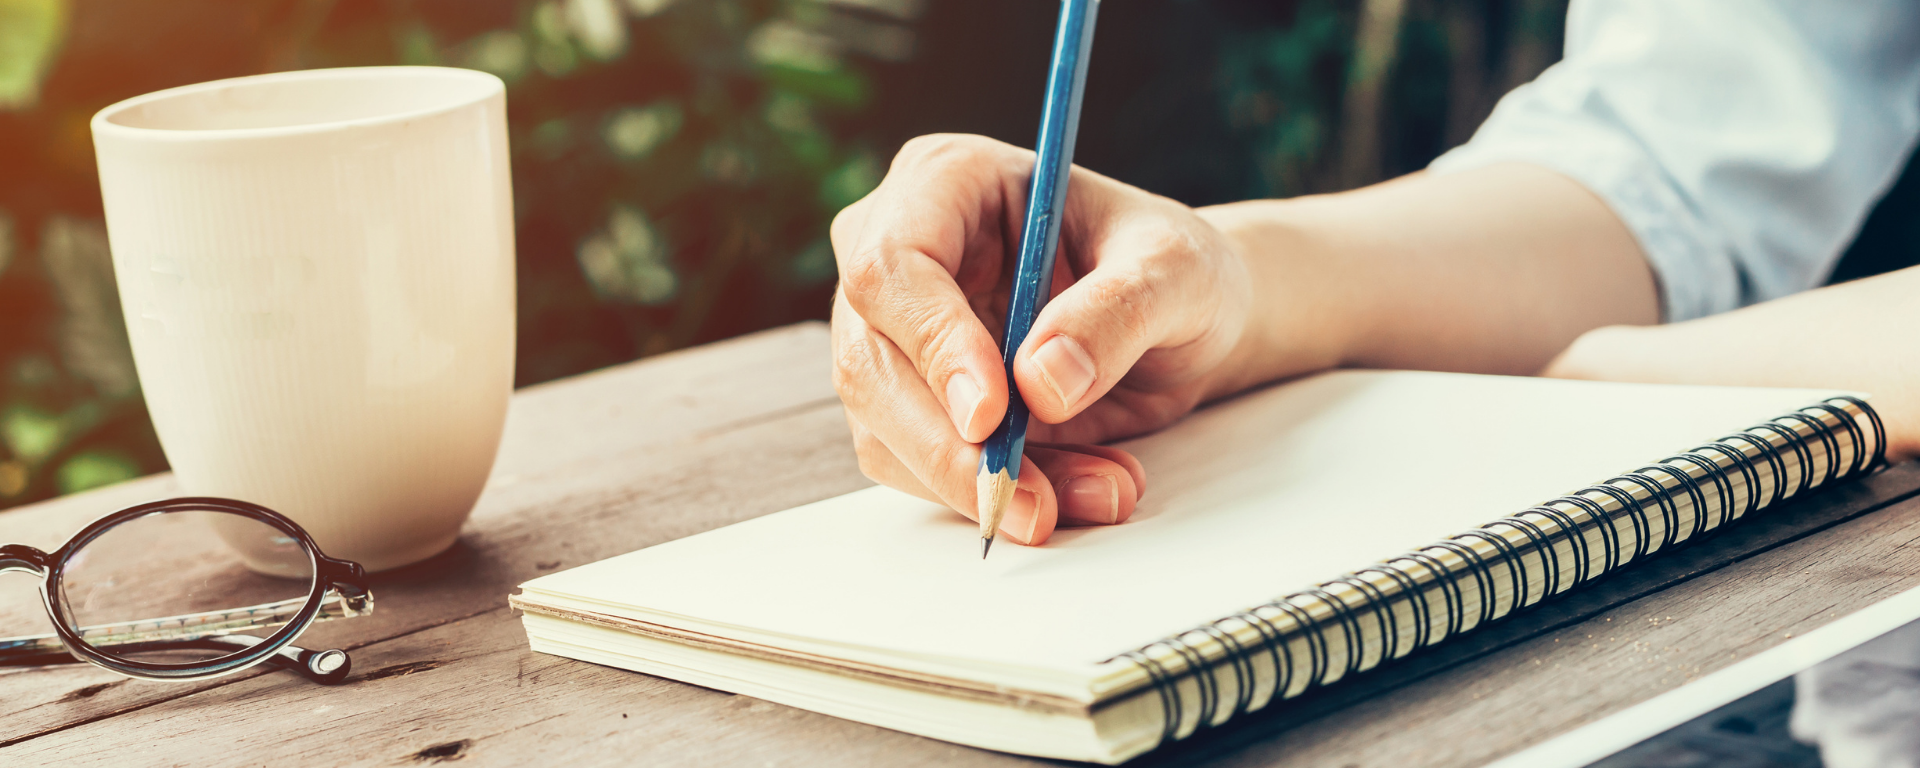 Taller de escritura: mano escribiendo con lápiz sobre cuaderno, en una mesa en exteriores, con una taza de café